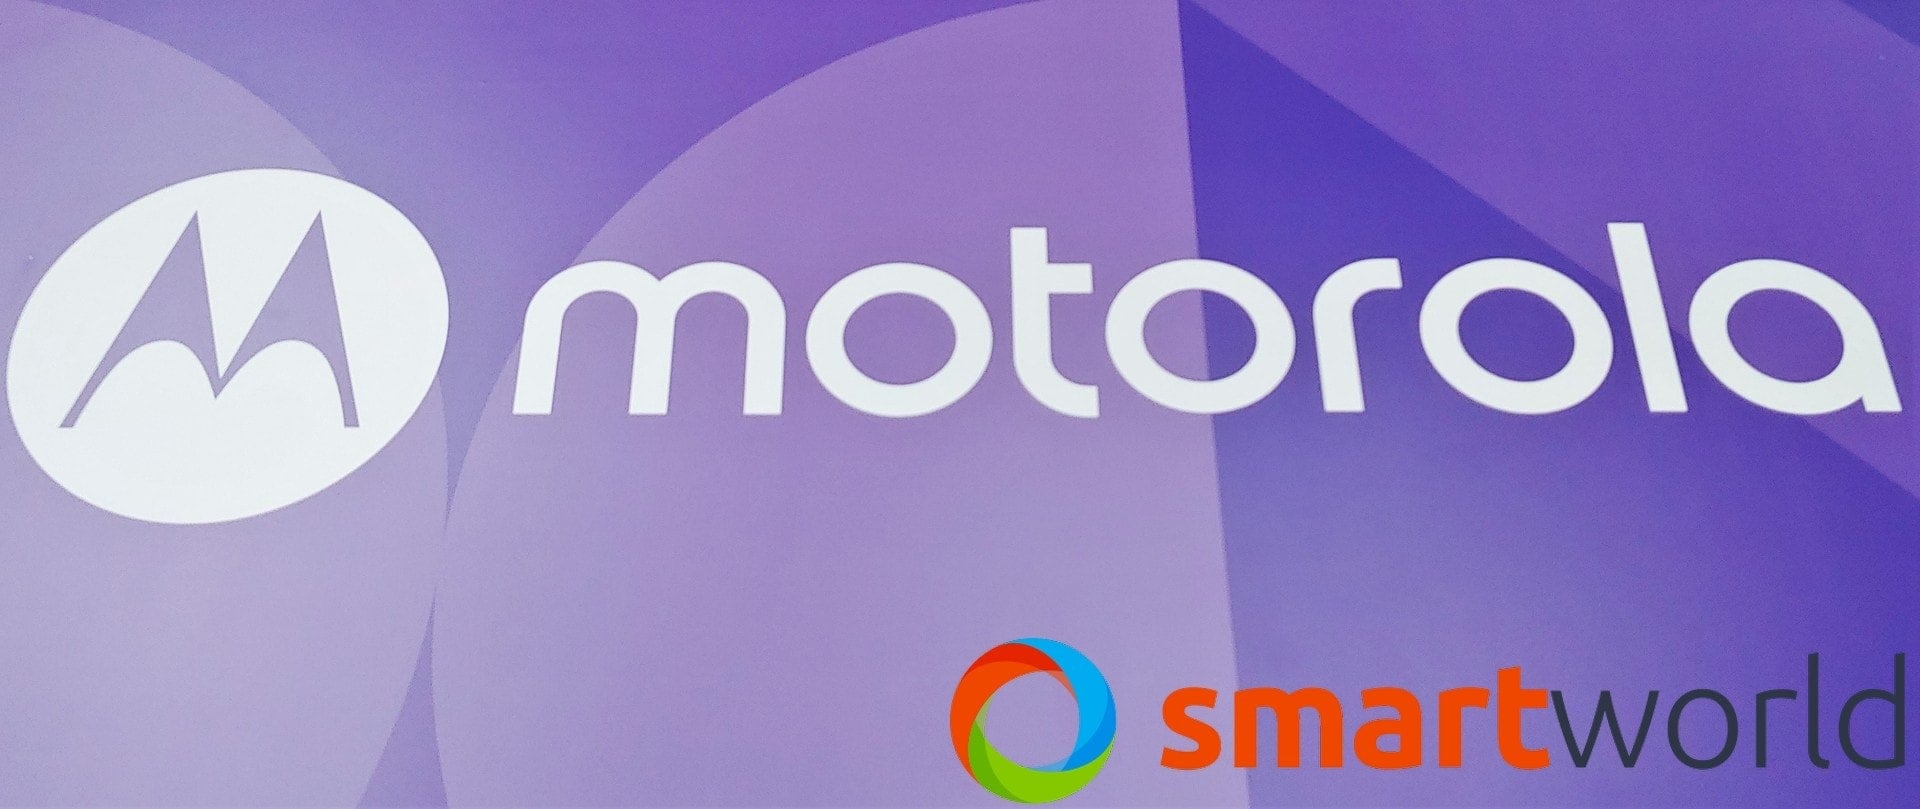 Motorola vuole stupire con il suo smartphone arrotolabile